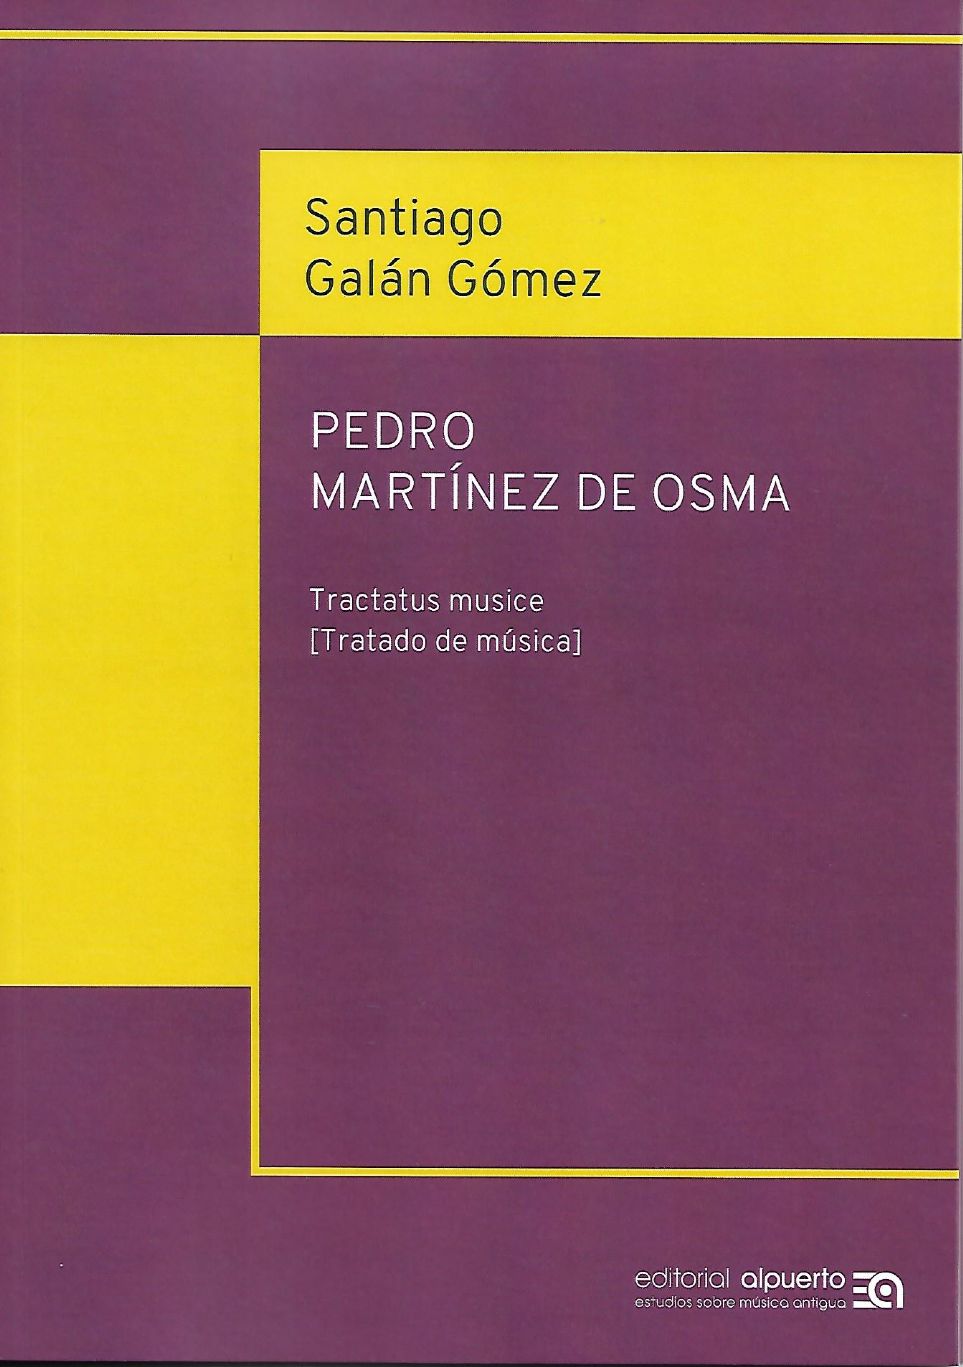 «Tractatus musice» de Pedro Martínez de Osma